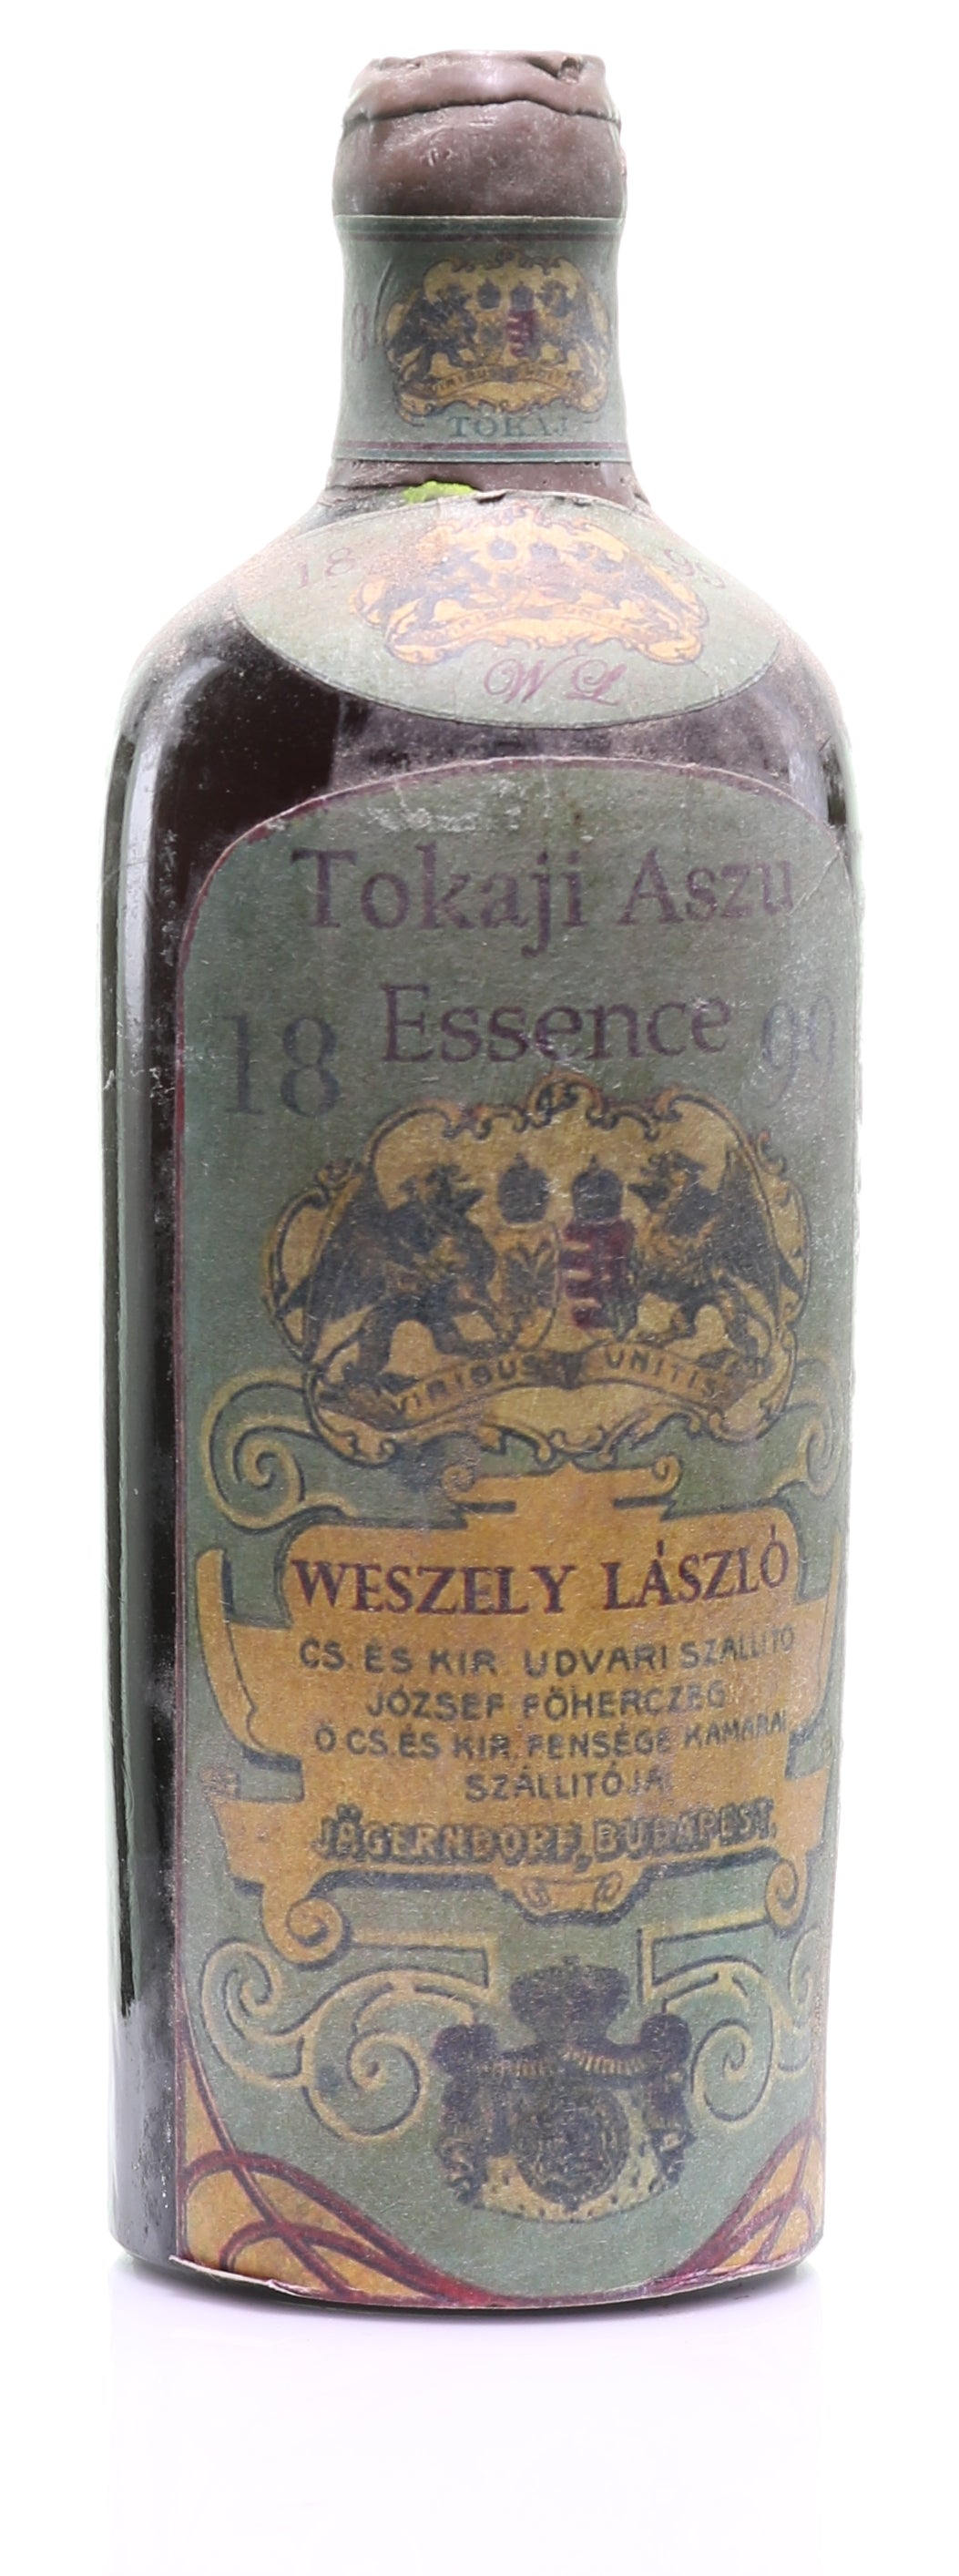 Tokaji Aszú Essencia 1899 Weszely László - legendaryvintages